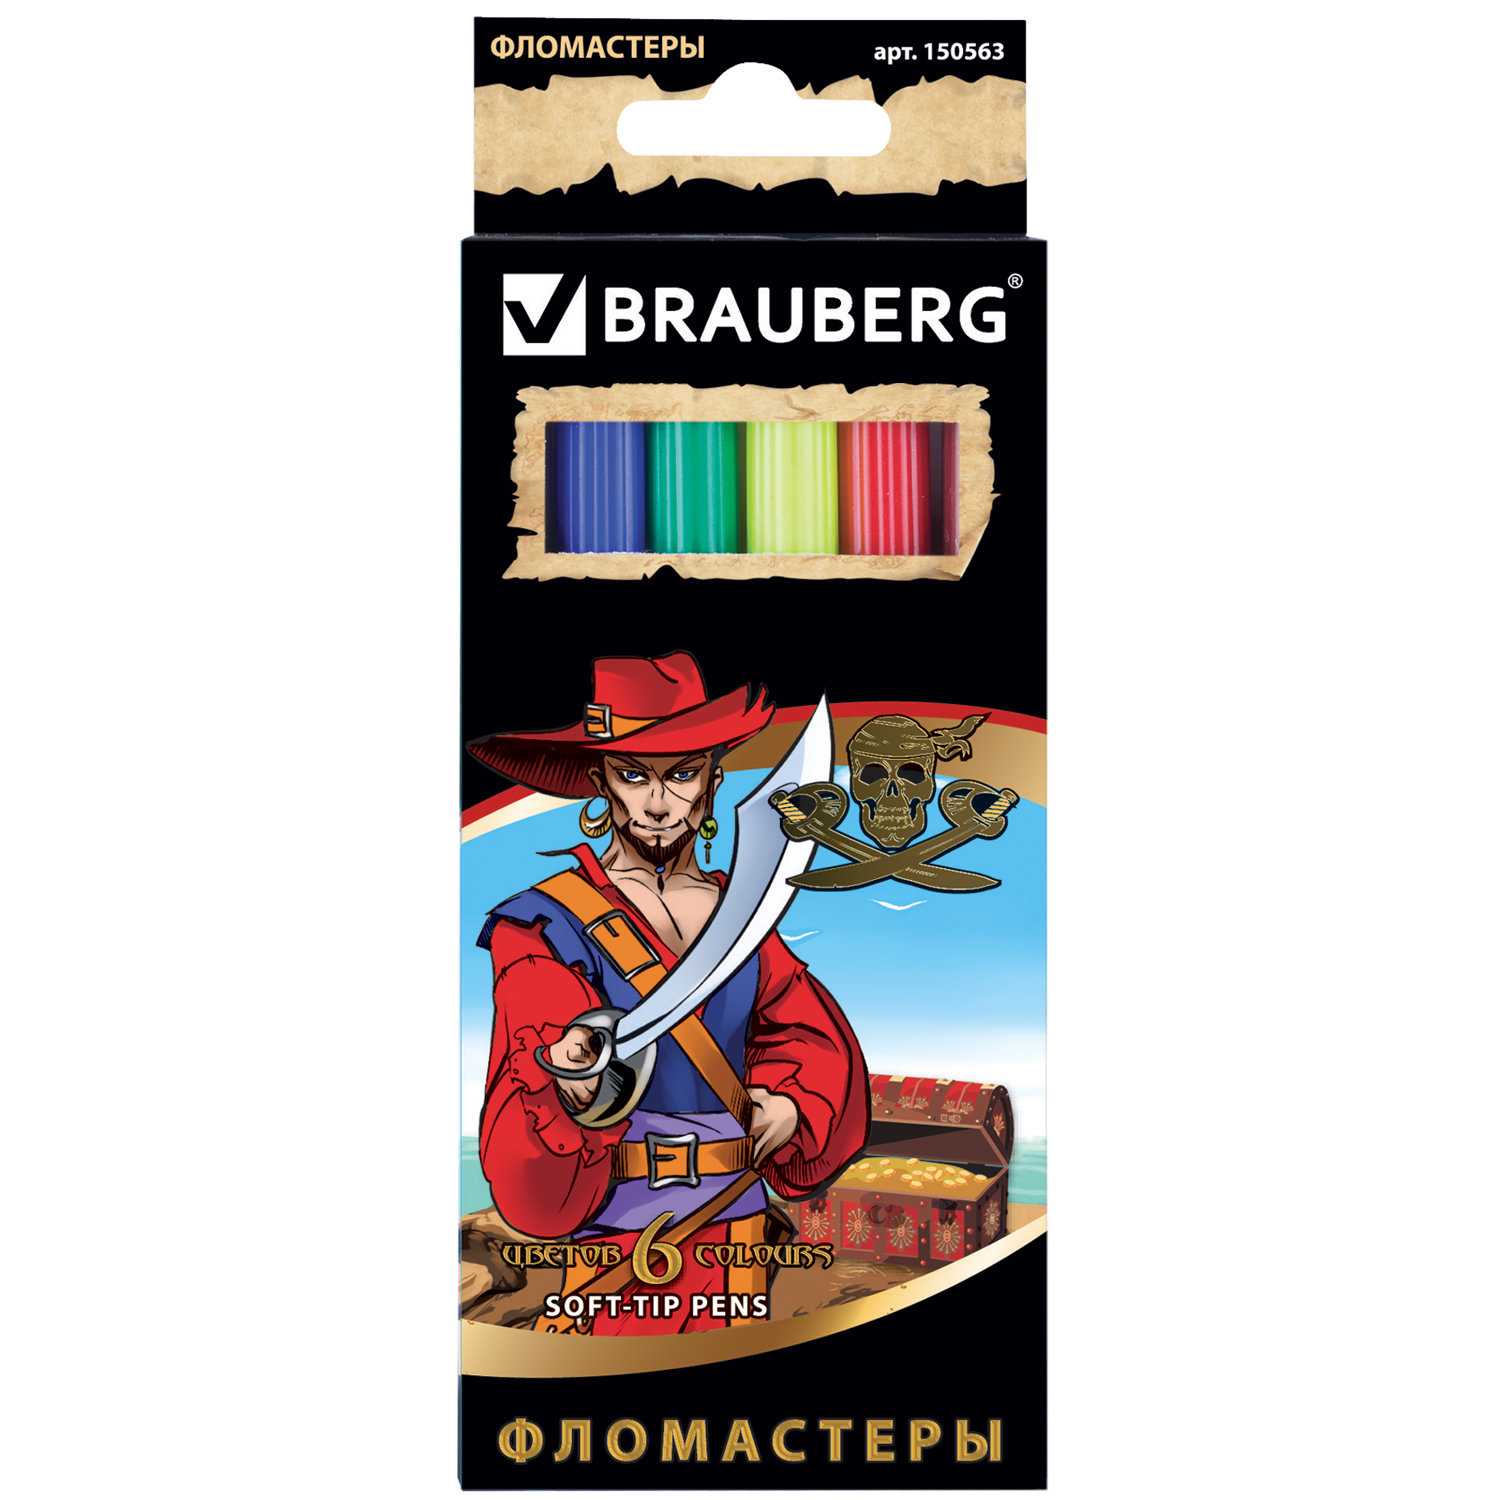 Фломастеры BRAUBERG Корсары, 6 цветов, вентилируемый колпачок, картонная упаковка с золотистым тиснением, 150563 купите по выгодной цене